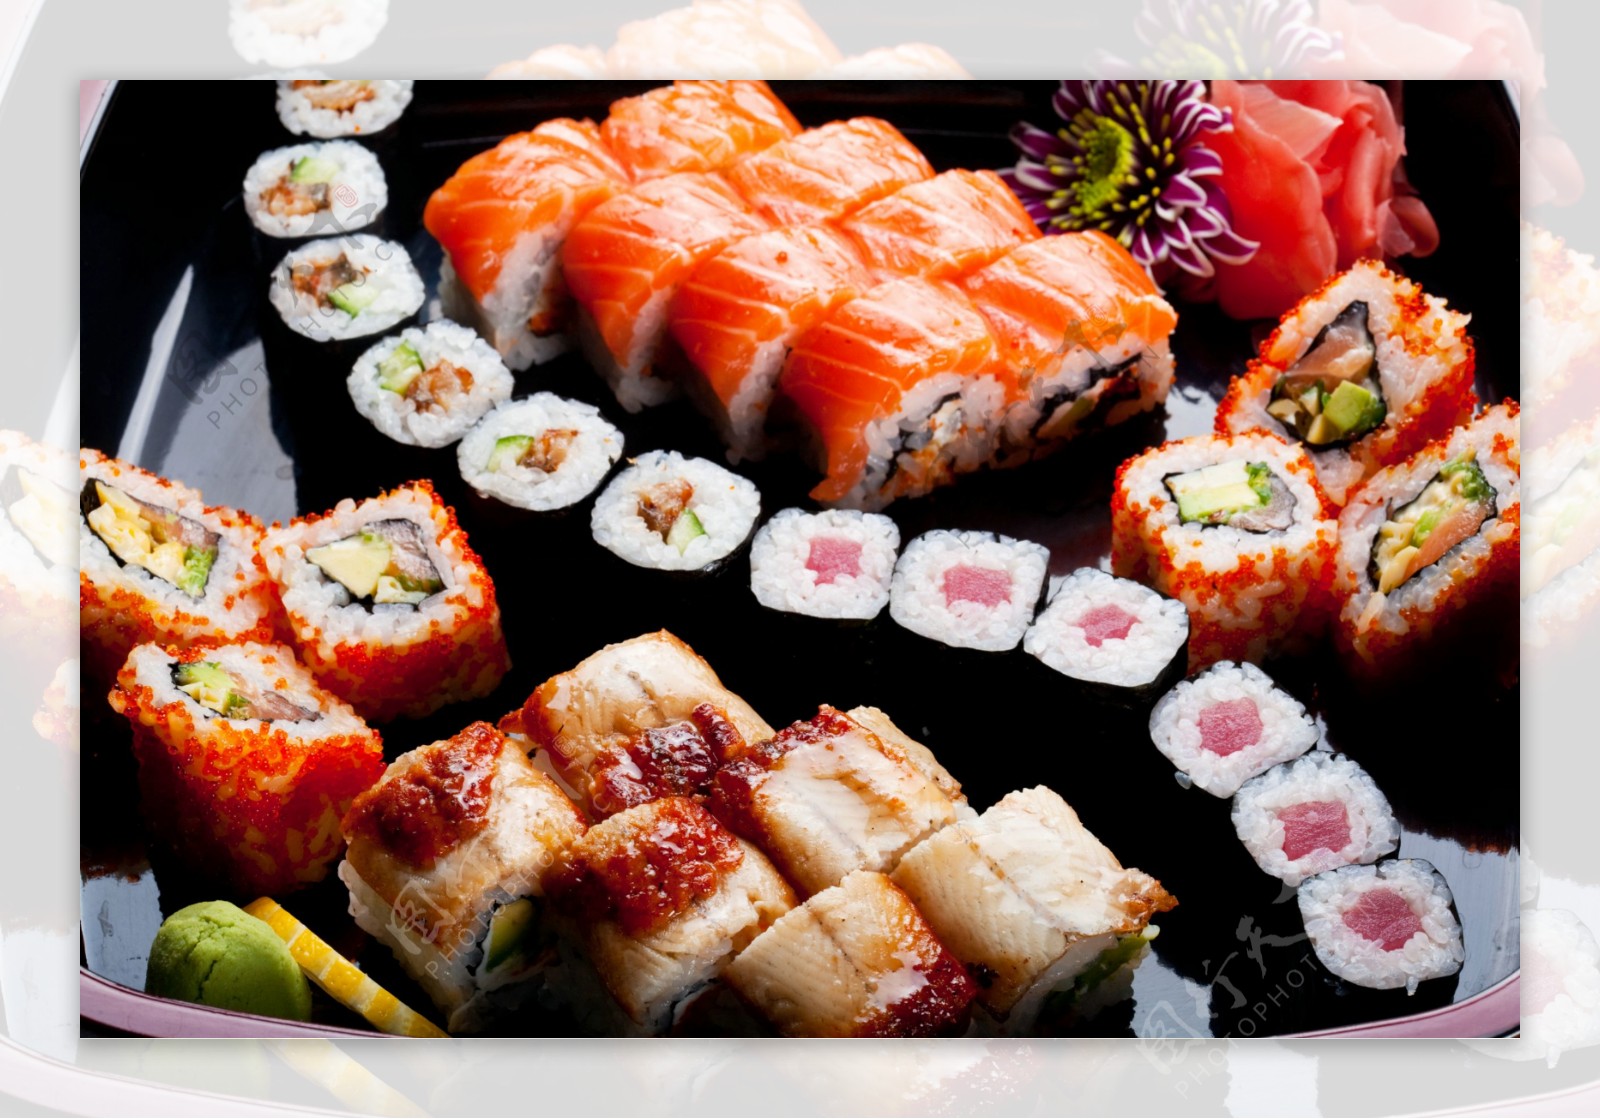 海鲜寿司鱼类菜肴食物